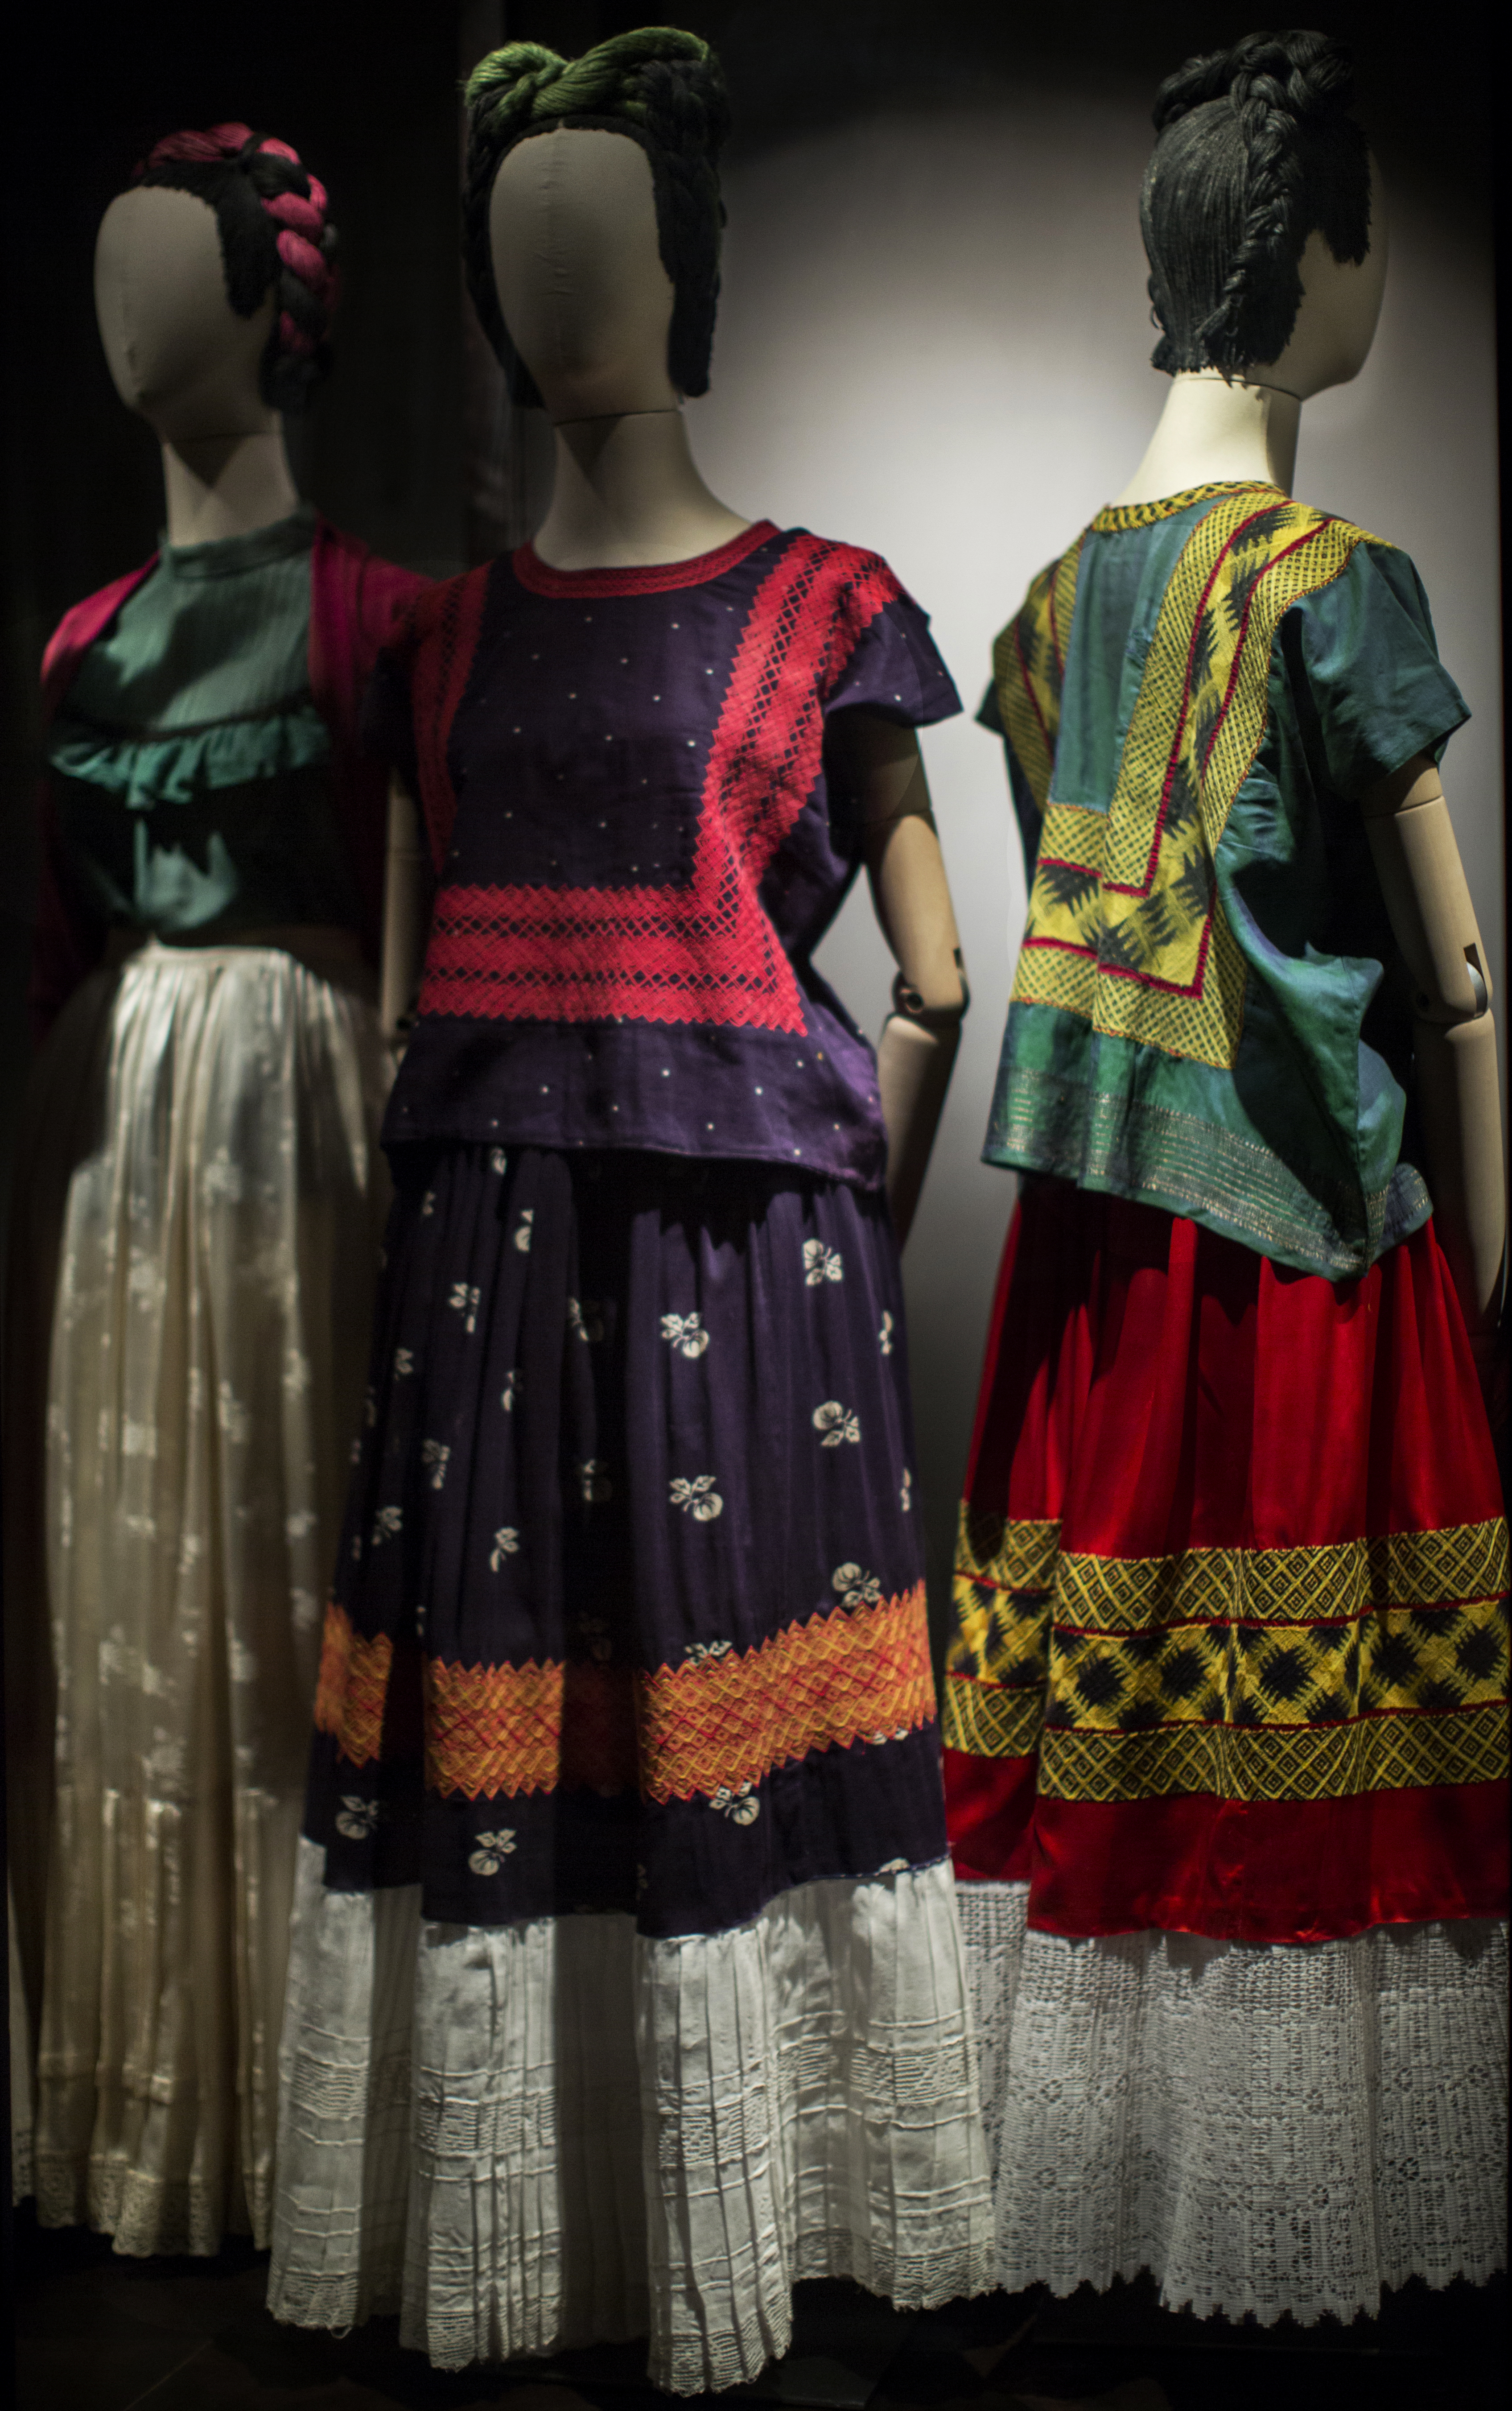 Confuse Dictatorship String Las apariencias engañan: los vestidos de Frida Kahlo | Mexicoestademoda's  Blog